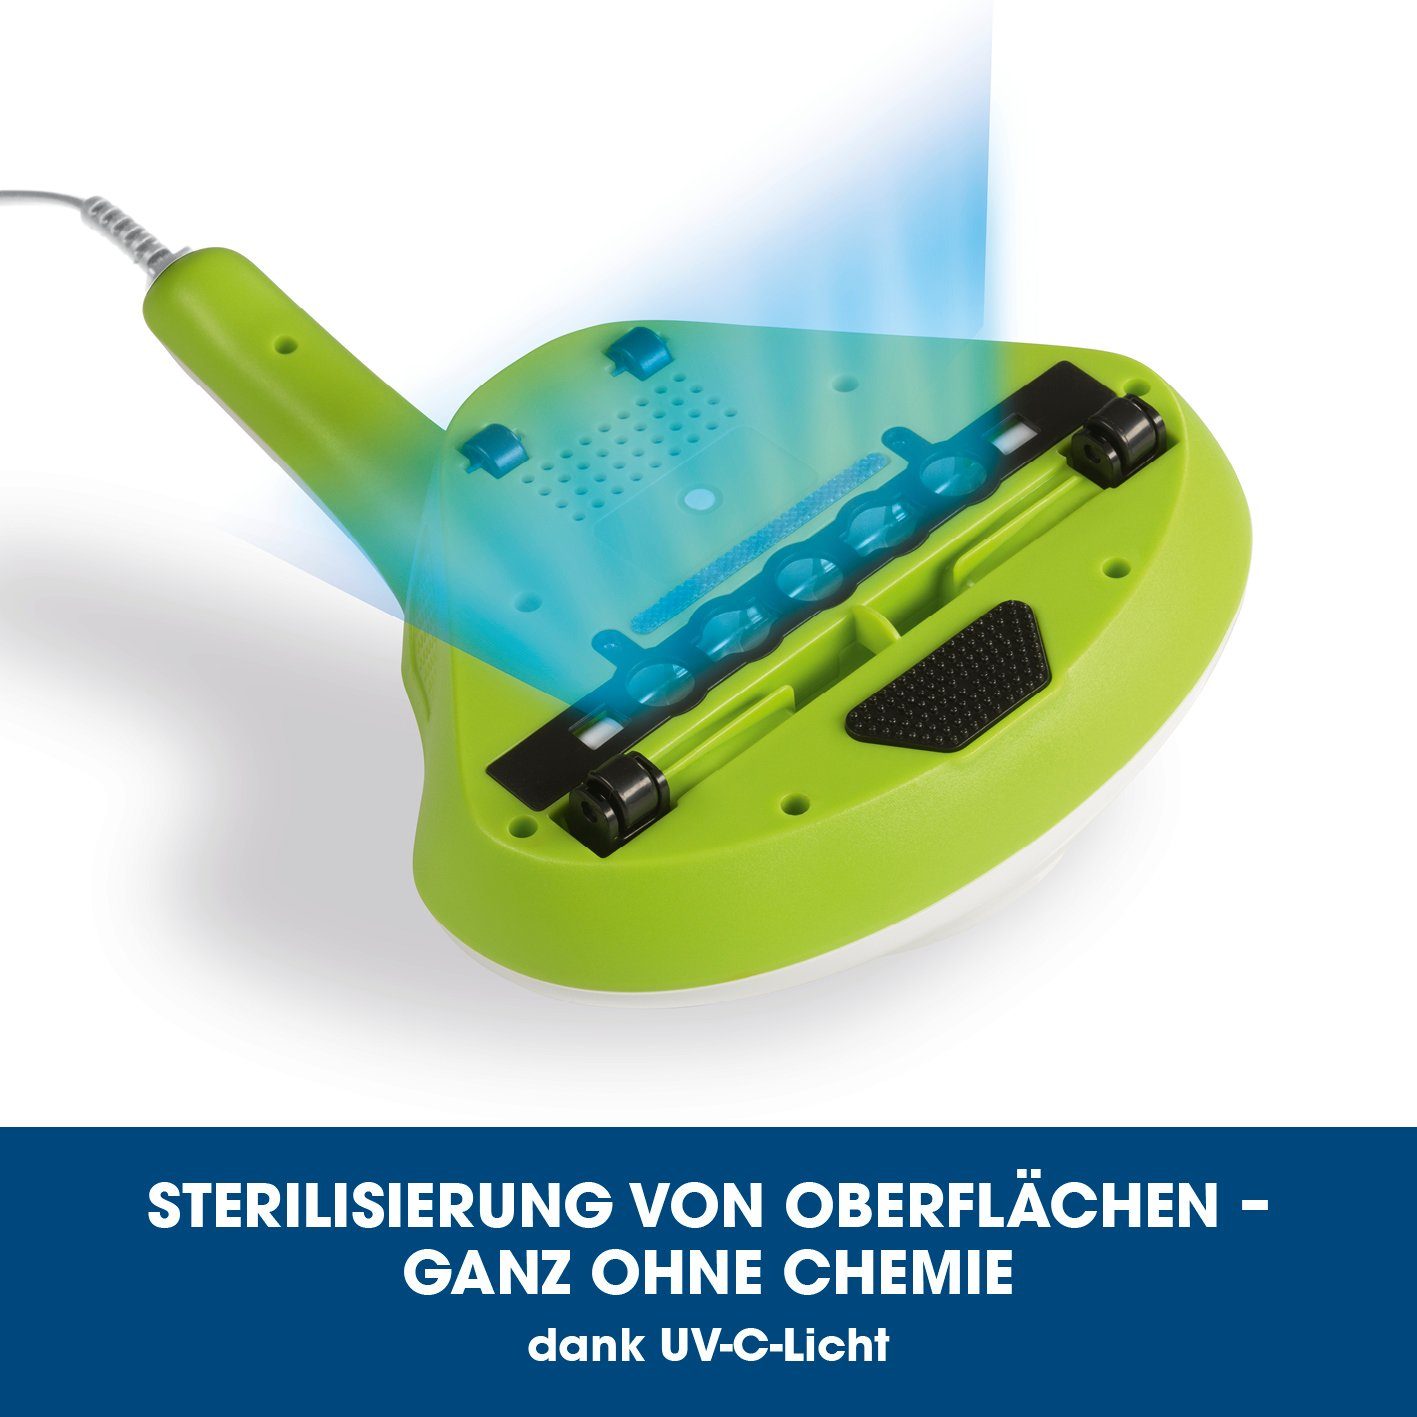 limegreen Milben-Handstaubsauger UV-C Licht, mit MAXXMEE 300,00 Matratzenreinigungsgerät W,